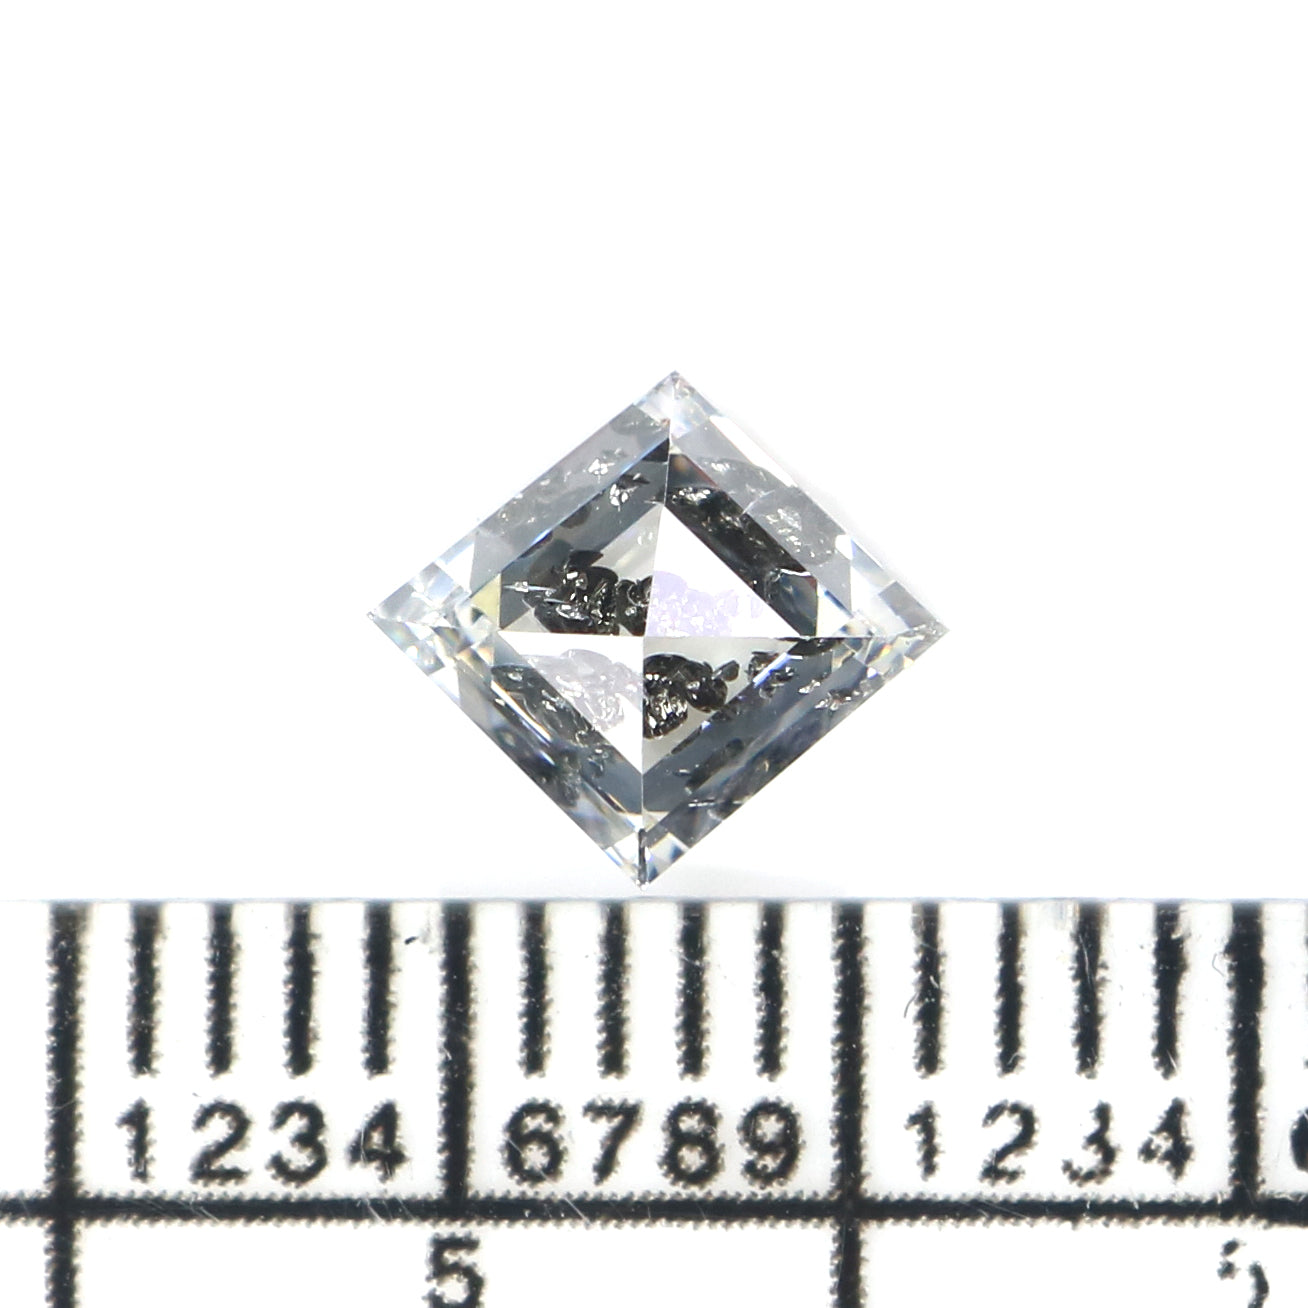 1.07 CT Natural Loose Kite Shape Diamond White - F Color Kite Cut Diamond 7.45 MM Natural Diamond White - F Kite Rose Cut Diamond QL2677